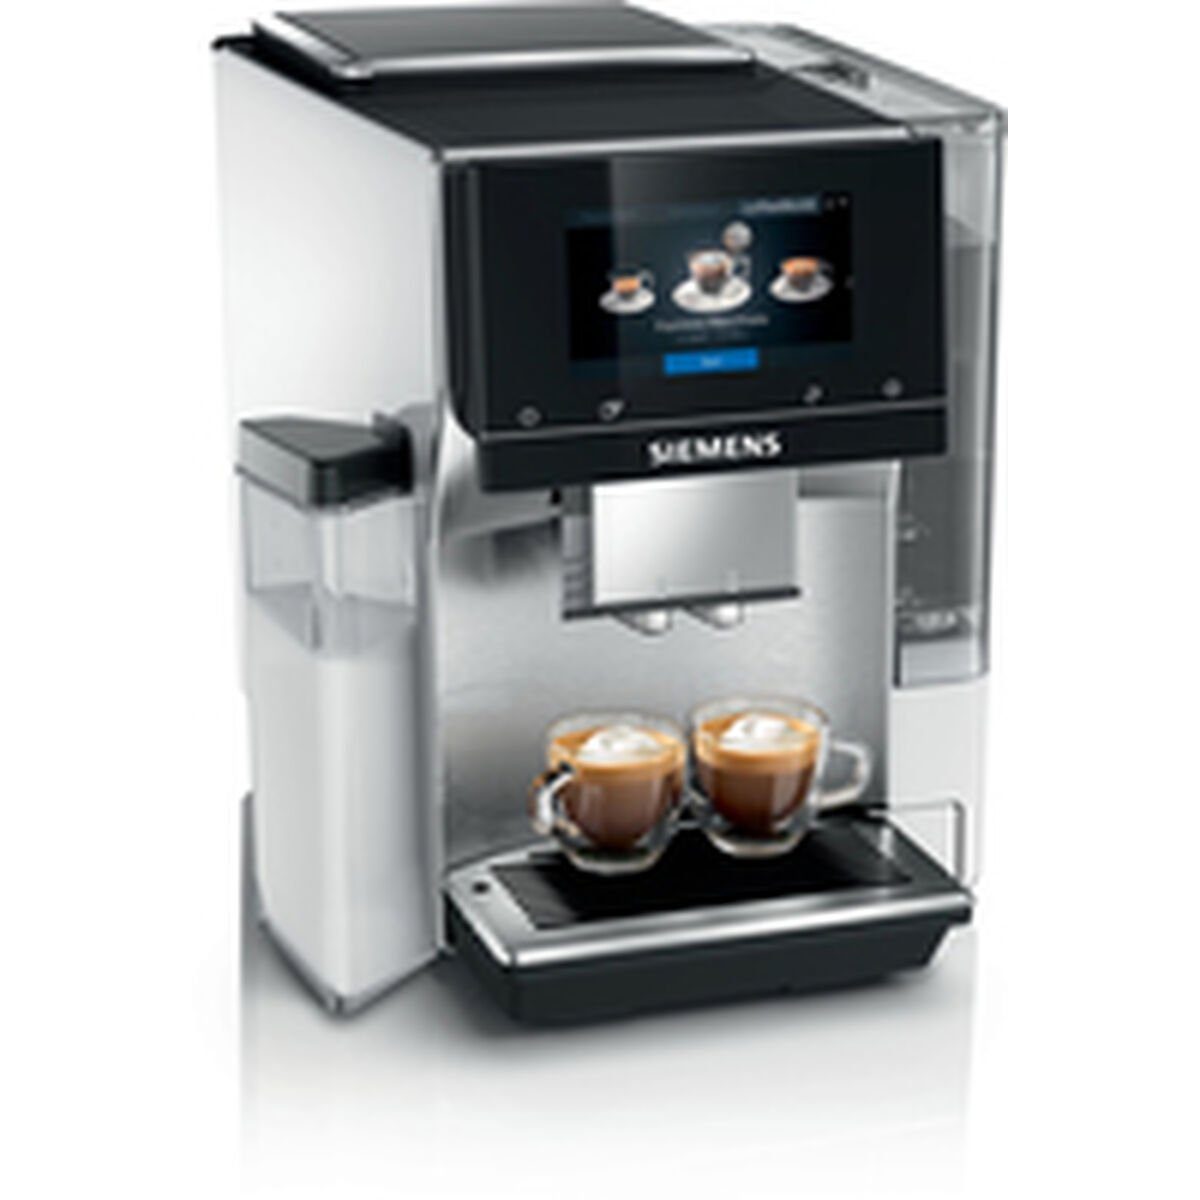 SIEMENS Kaffeevollautomat Superautomatische Kaffeemaschine AG W TQ705R03 Siemens 1500